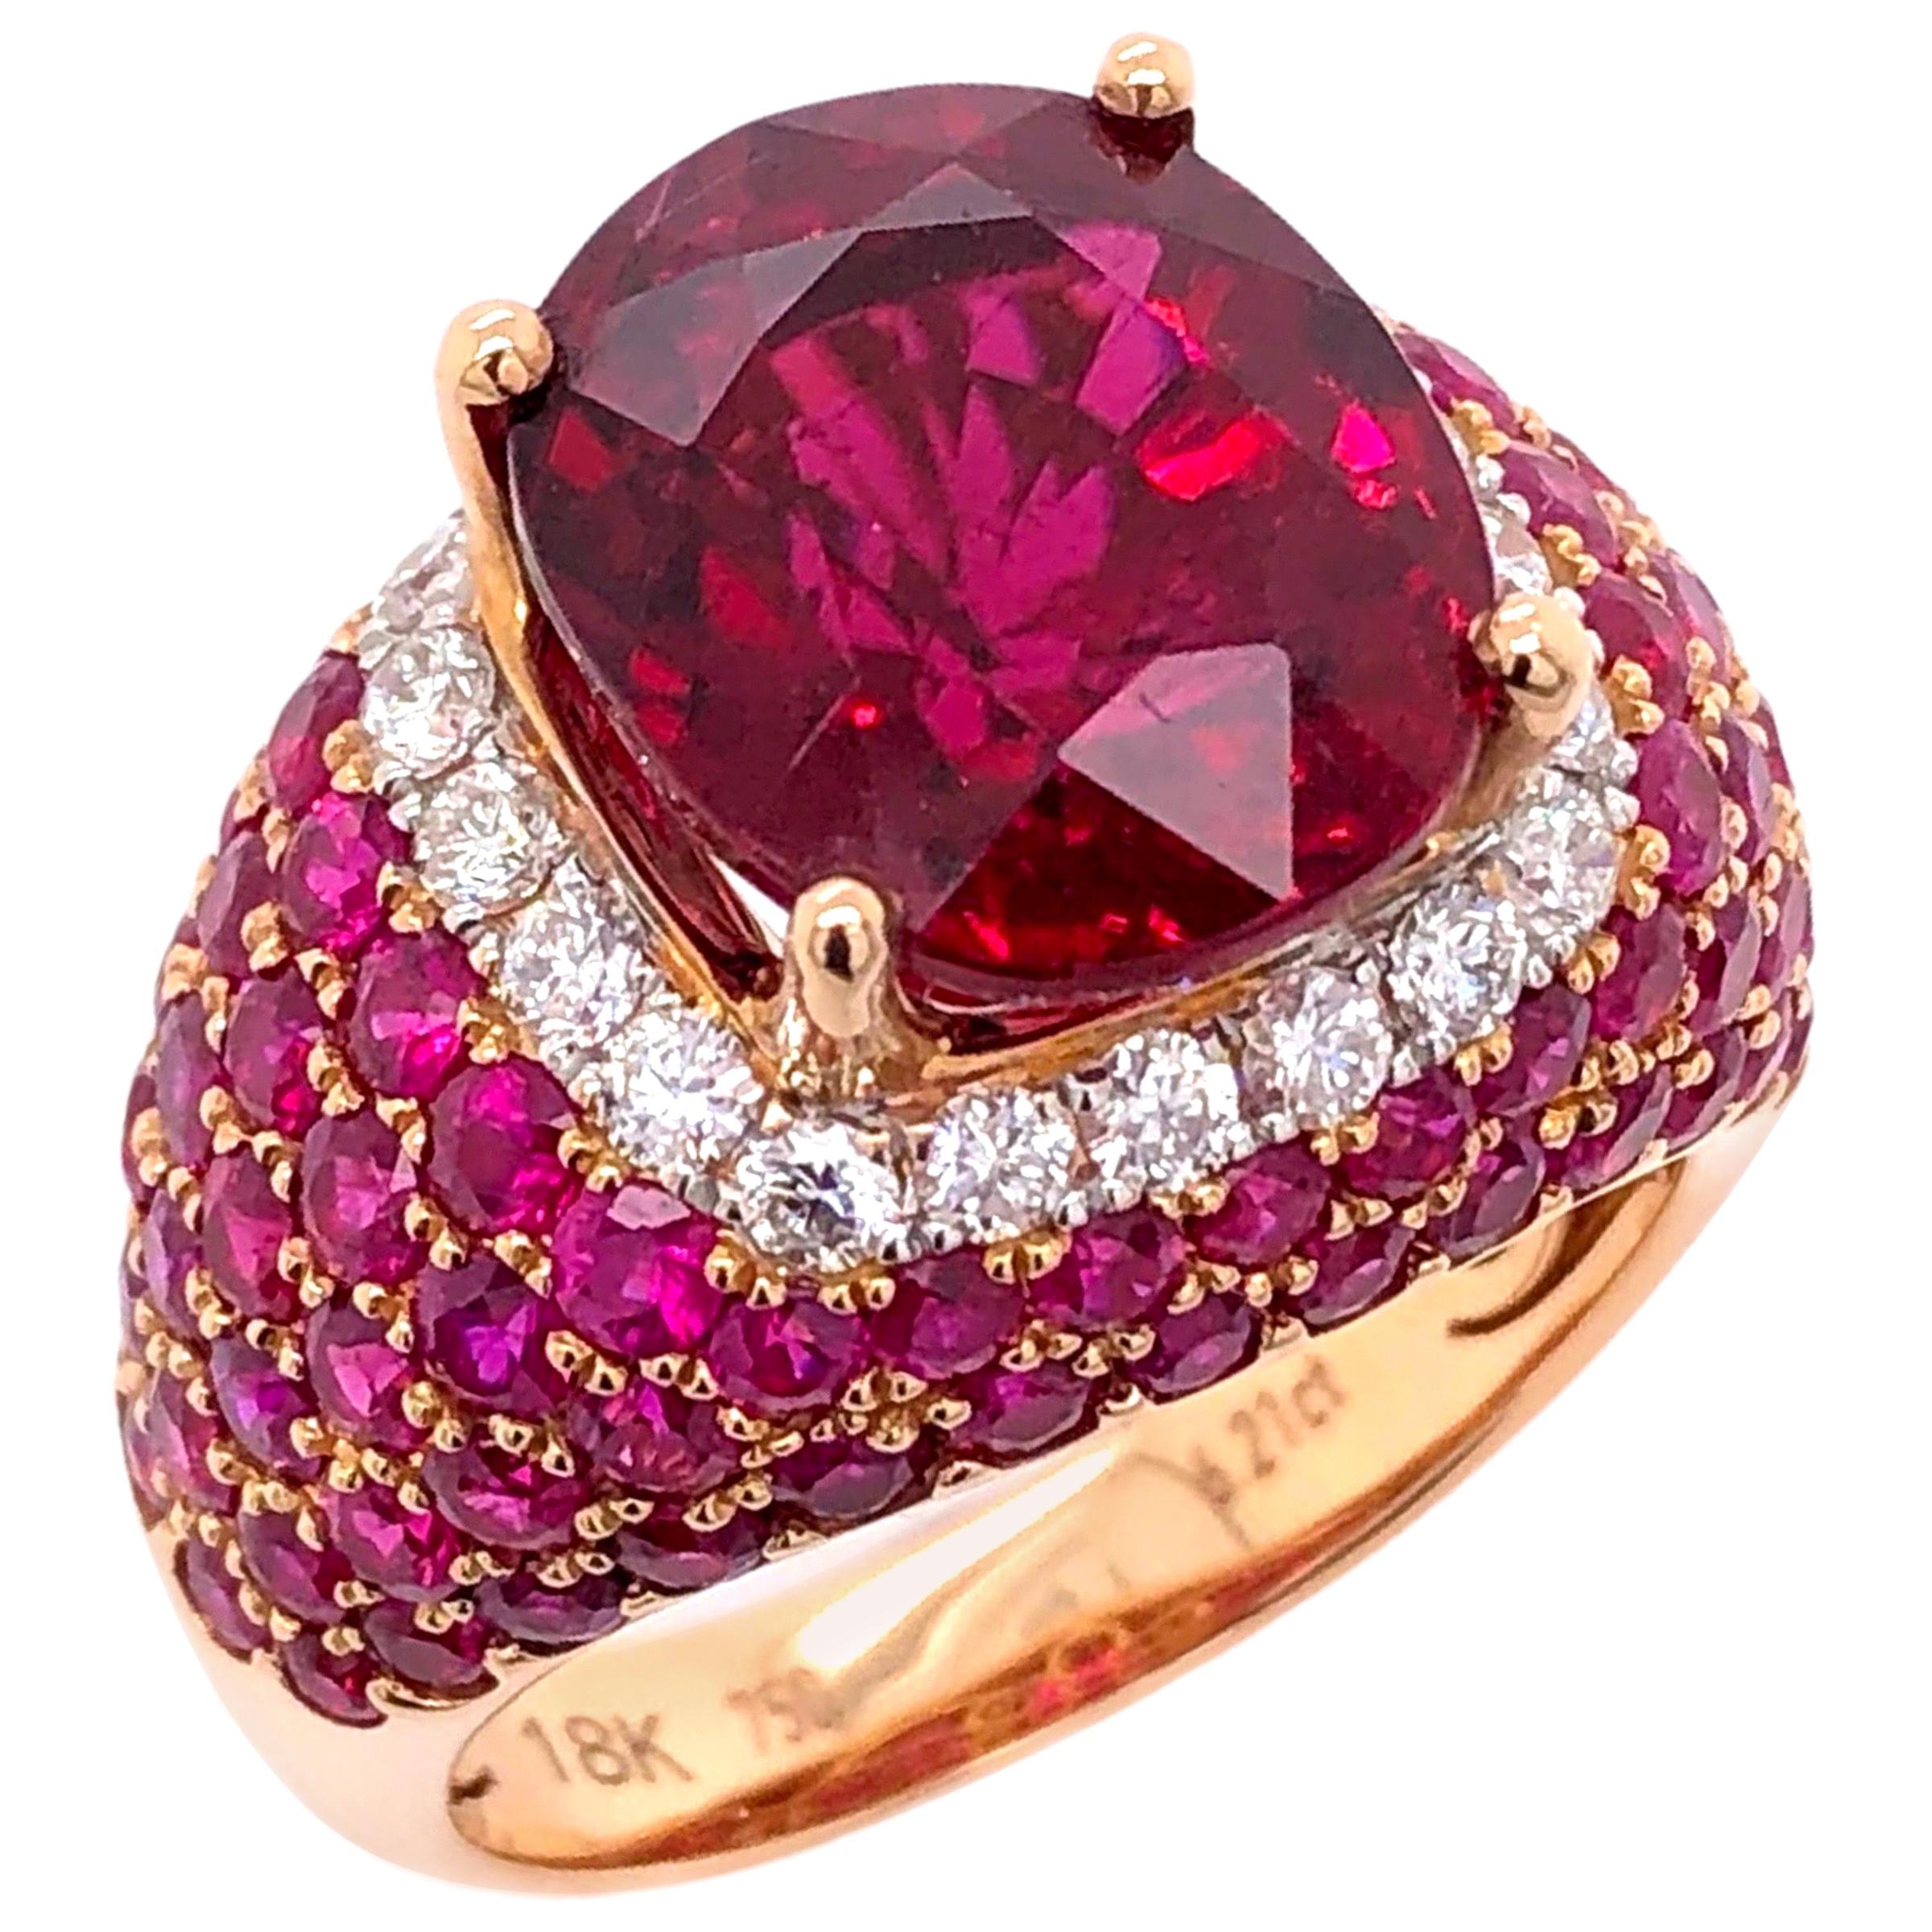 Paris Craft House 6.21 Carat Rubellite Ruby Diamond Ring in 18 Karat Rose Gold For Sale